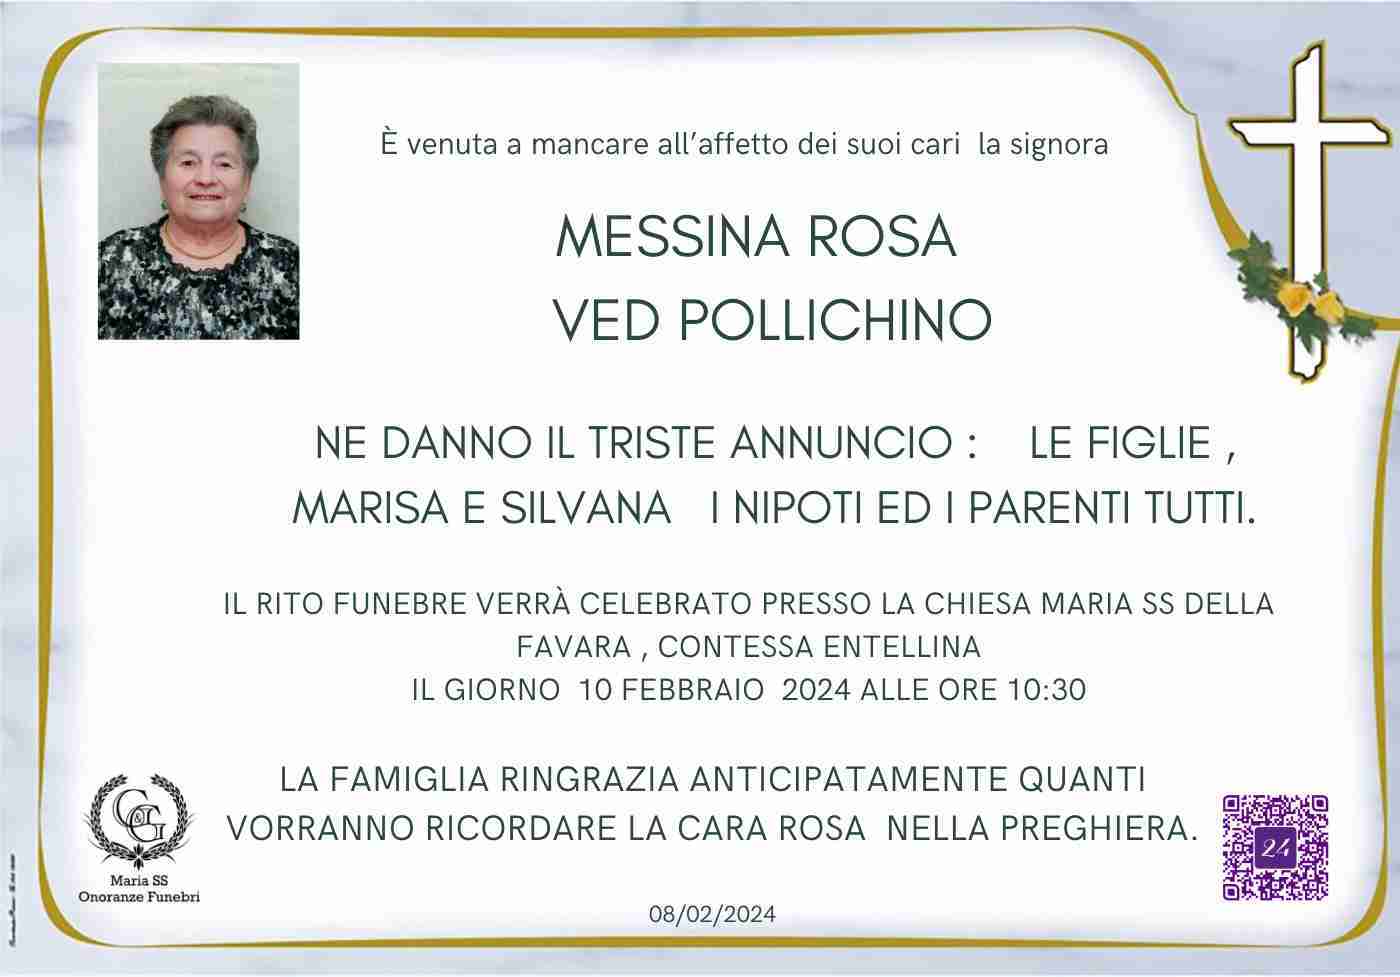 Rosa Messina